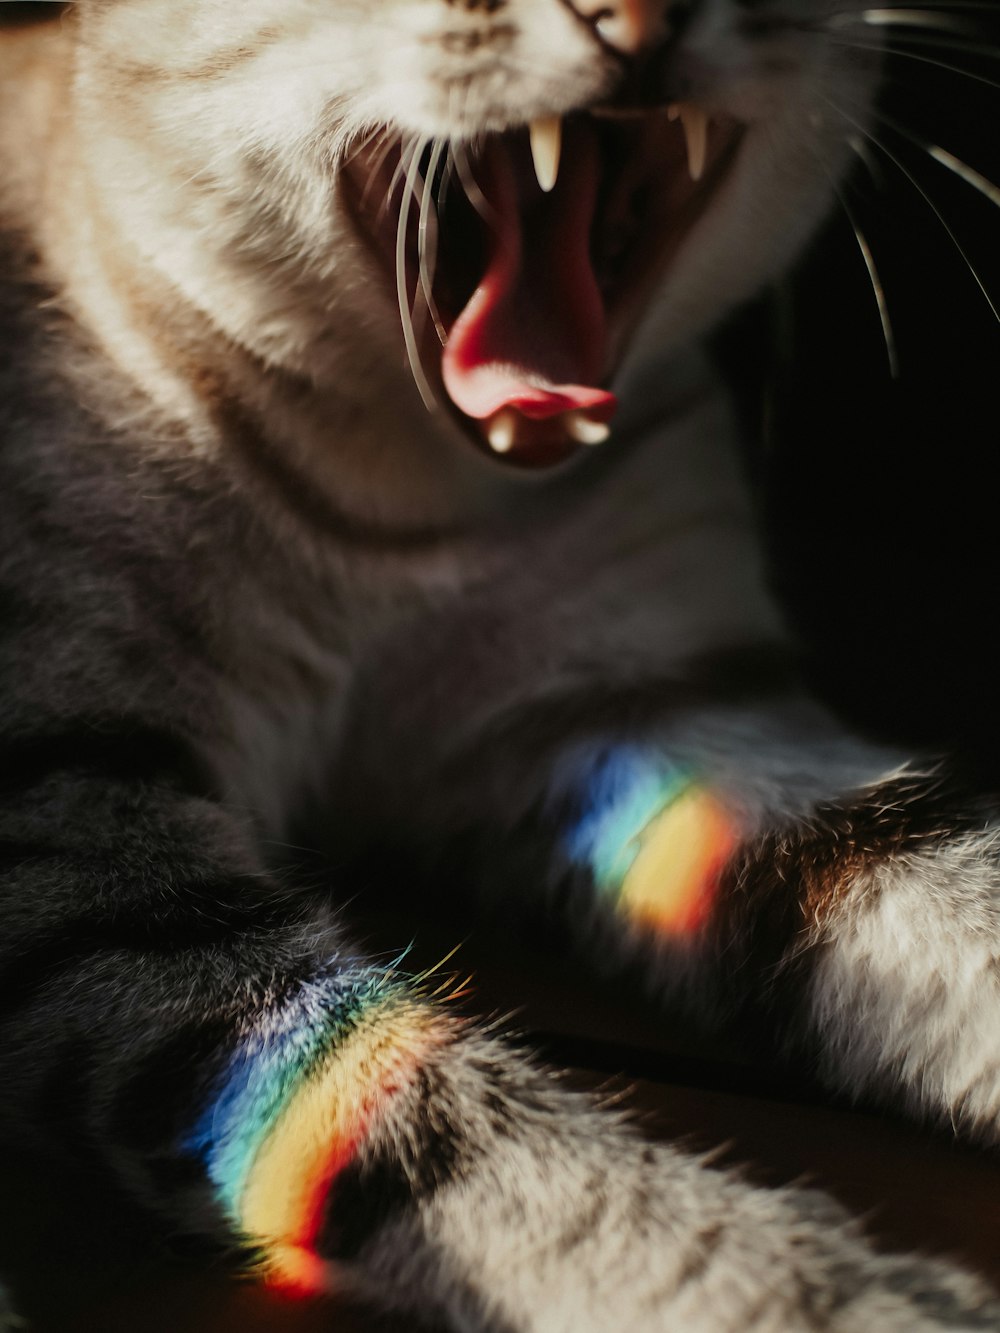 Un primo piano di un gatto con la bocca aperta